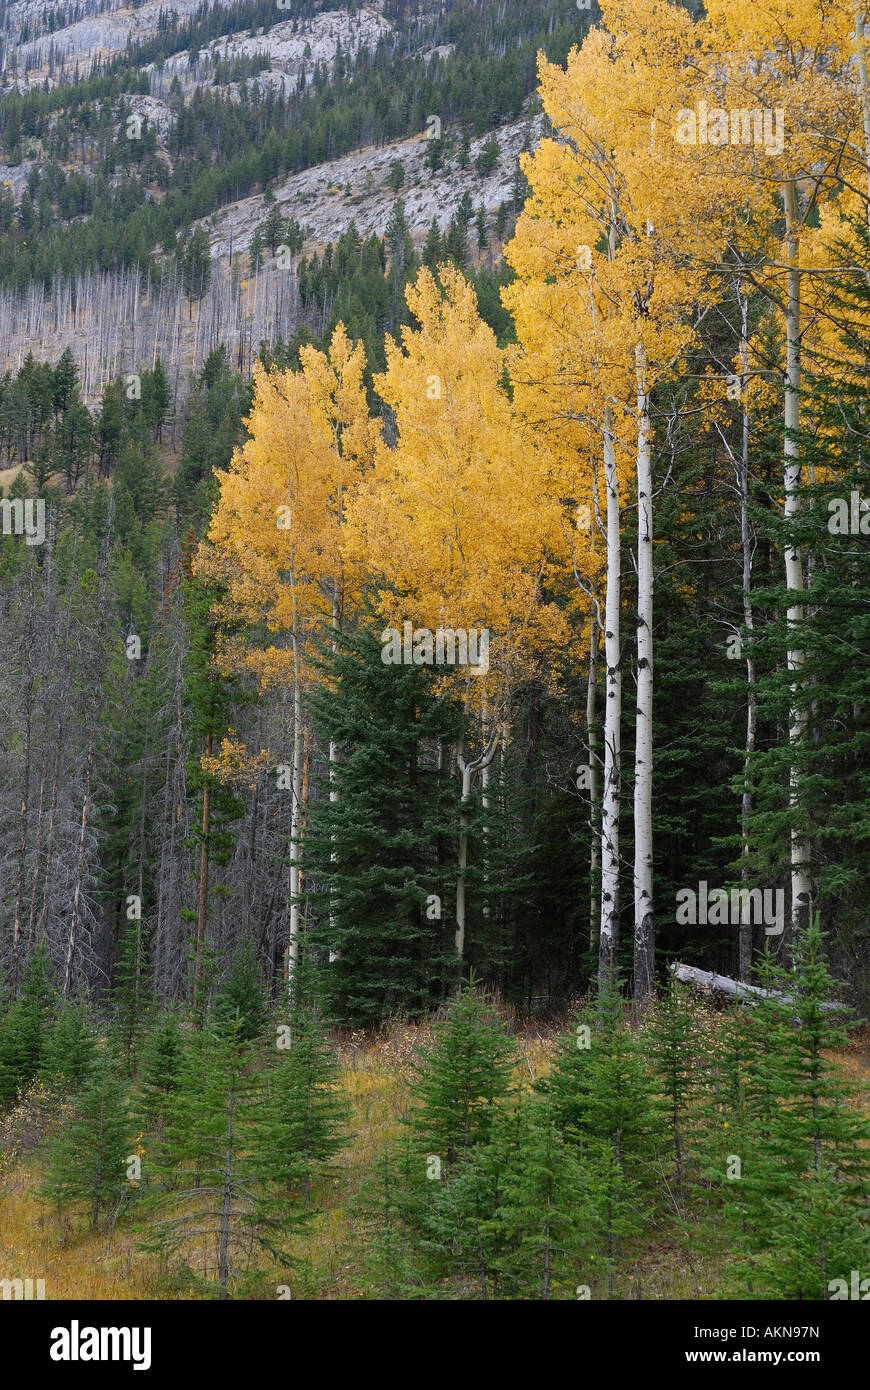 Stand de amarillo el álamo temblón árboles en otoño en las Montañas Rocosas Canadienses Gama Sawback Parque Nacional Banff Alberta Canada Foto de stock